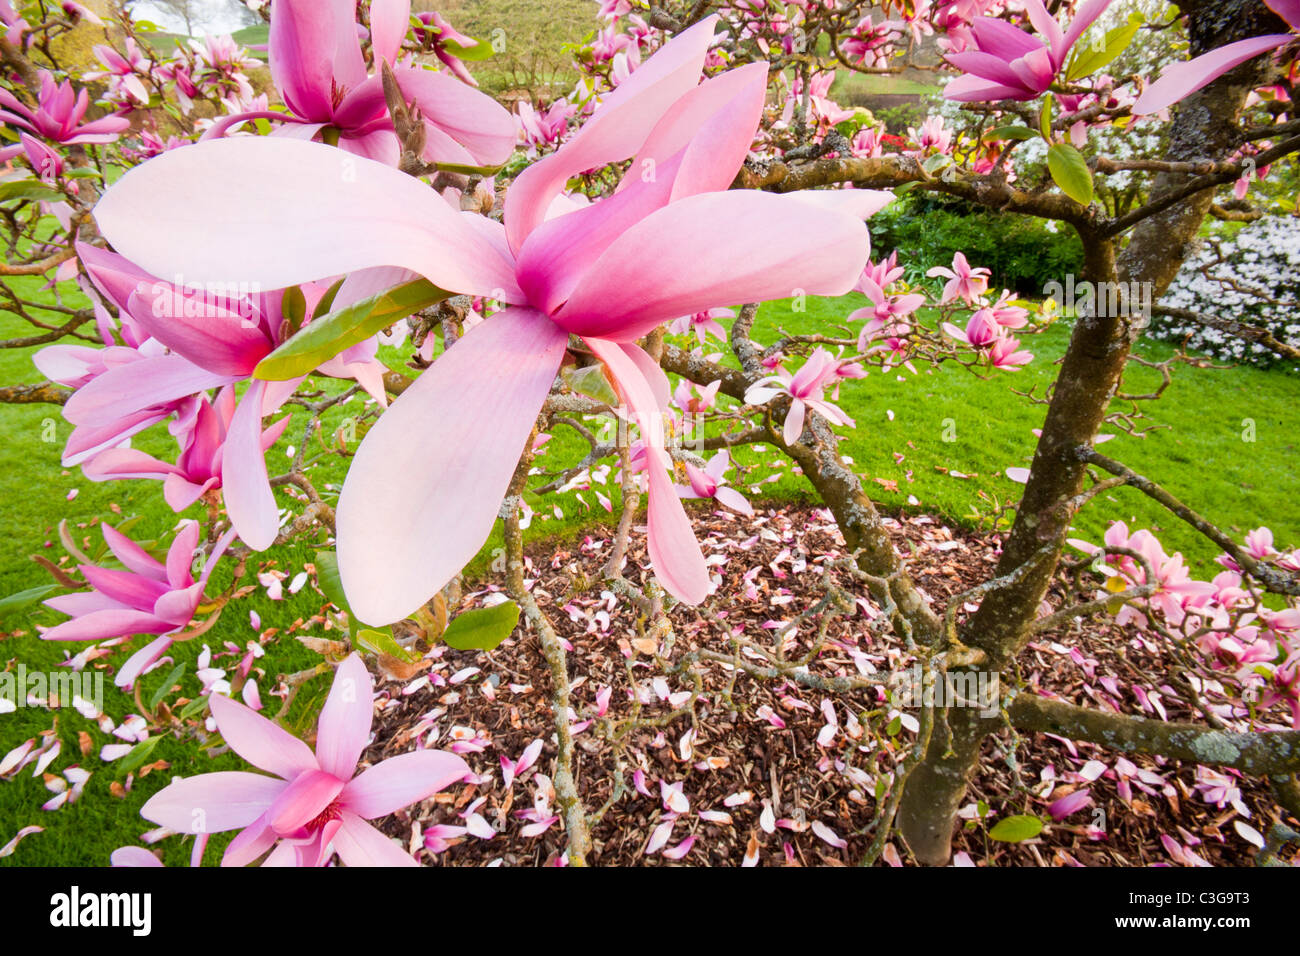 A Magnolia (Caerhays surprise) tree in Holehird Gardens, Windermere, Cumbria, UK. Stock Photo